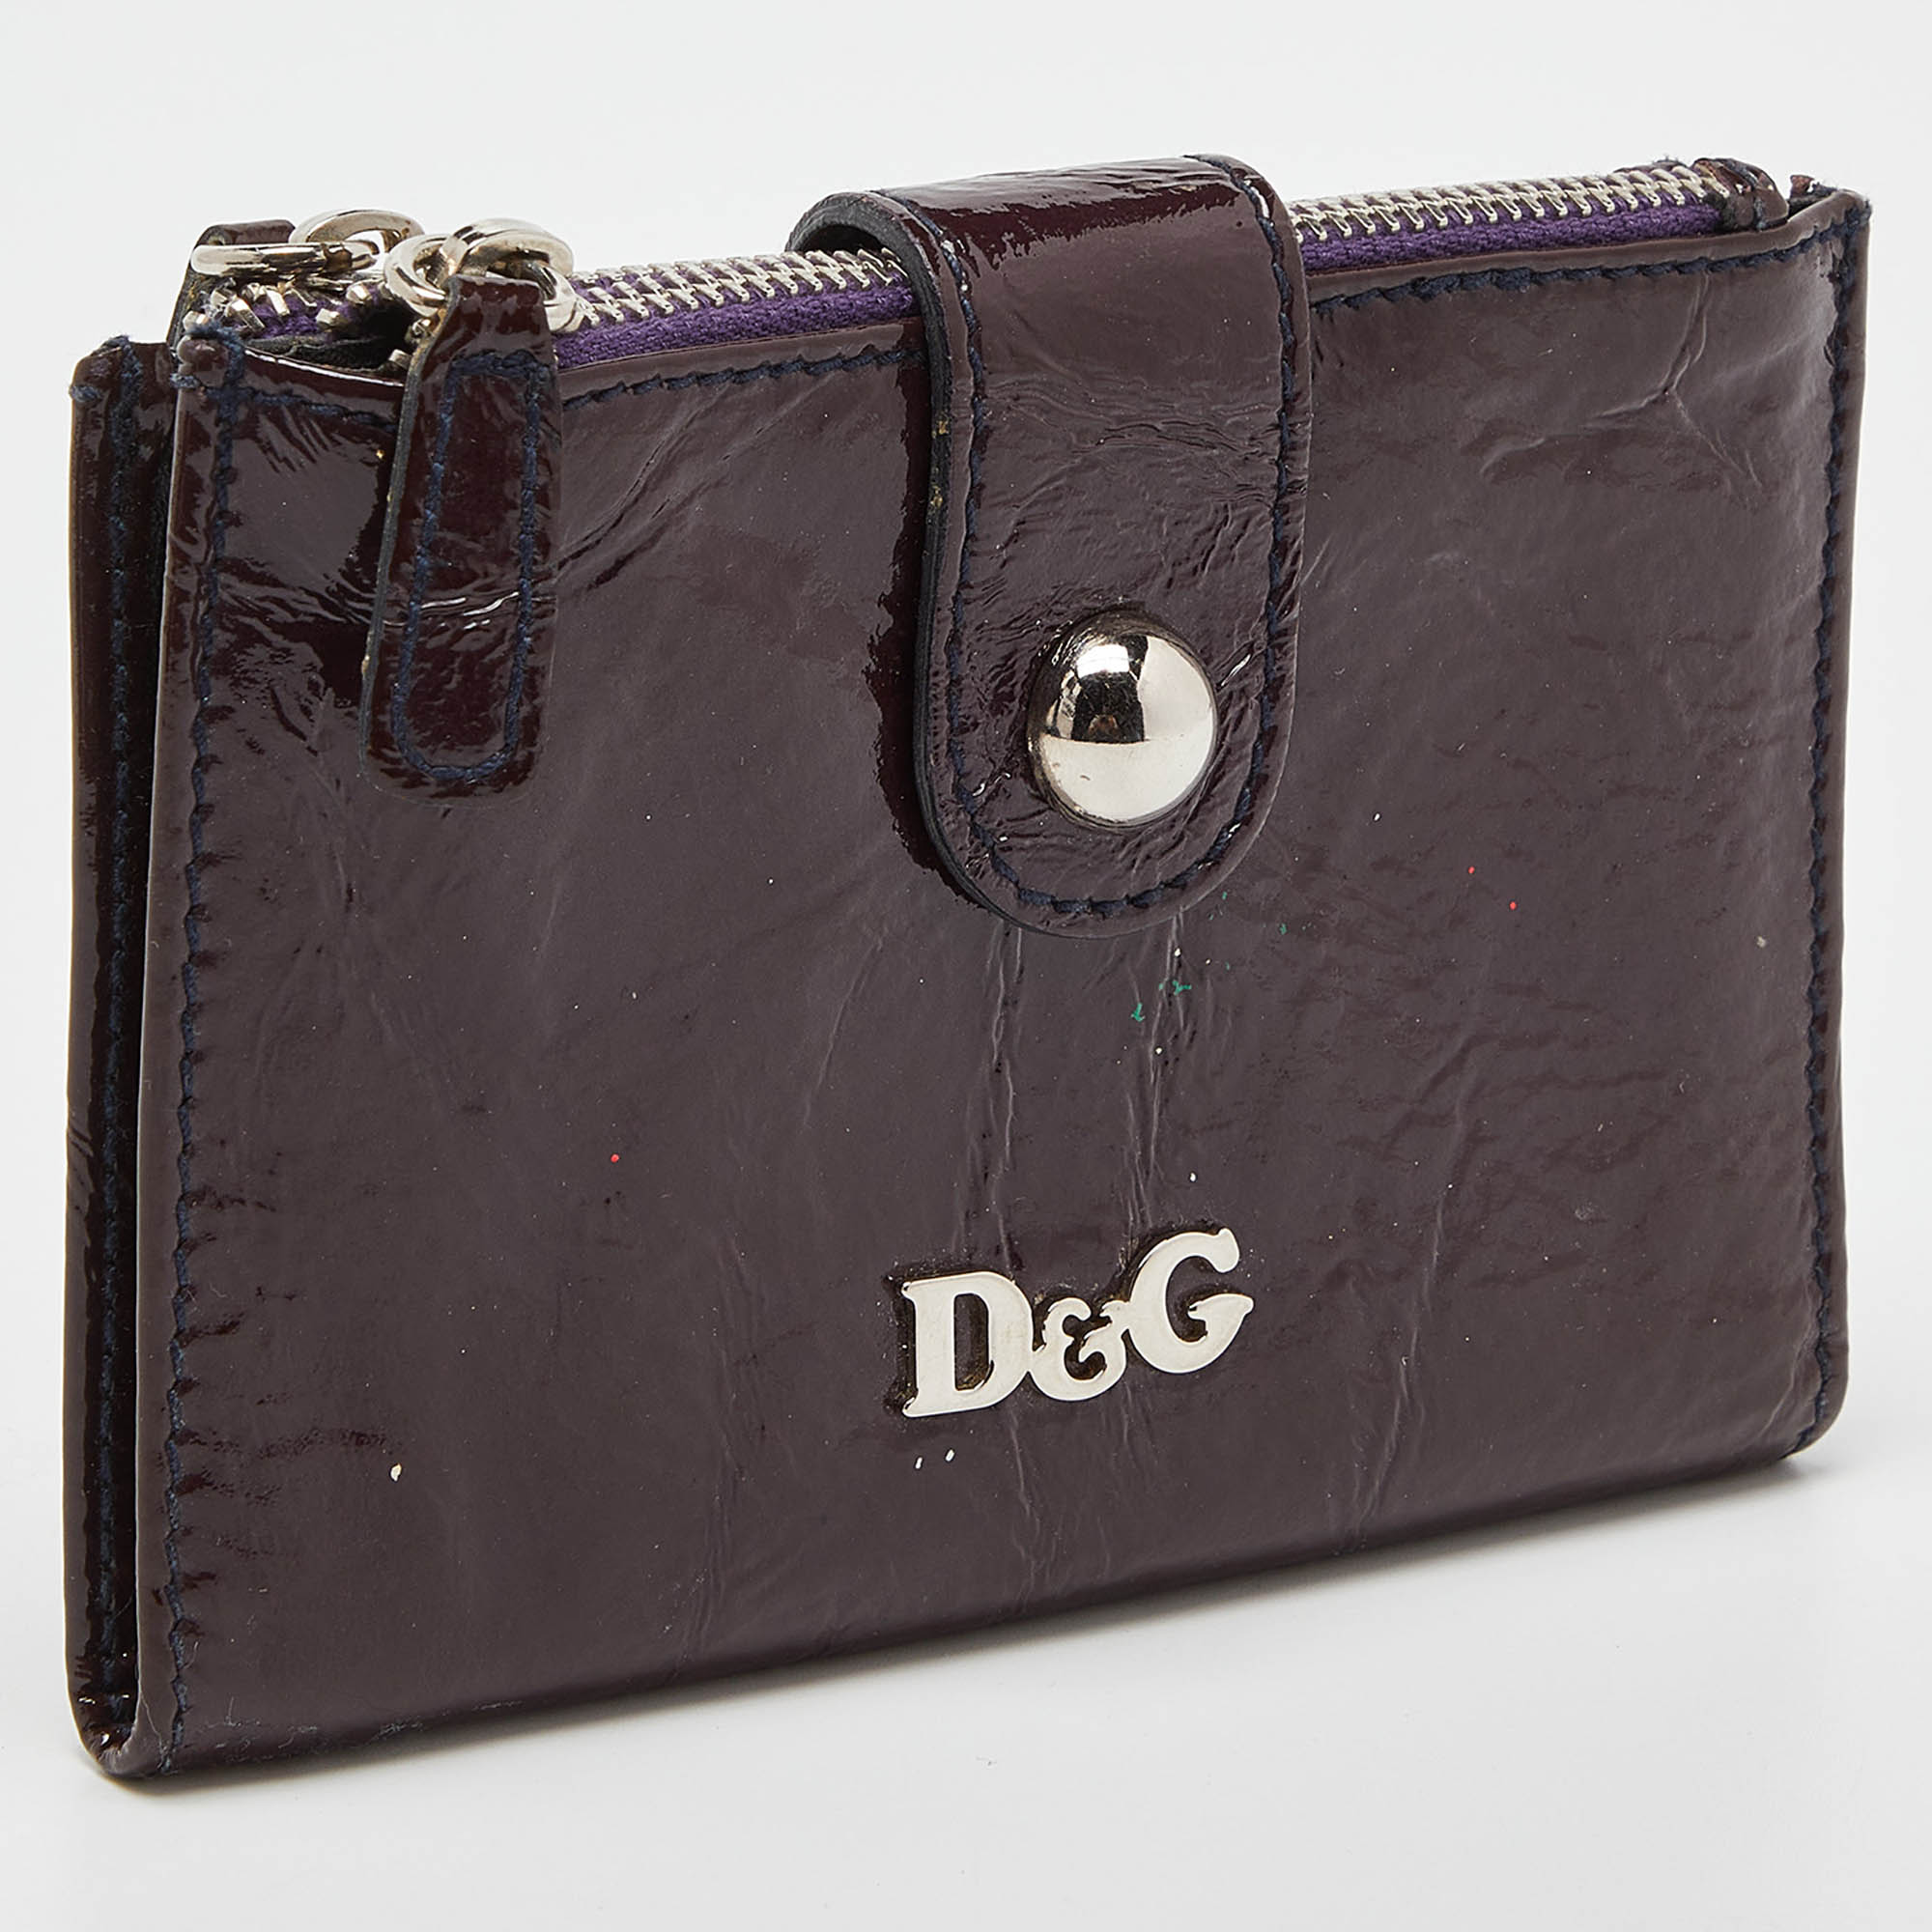 D&G Plum Patent Leather Double Zip Bifold Flap Wallet